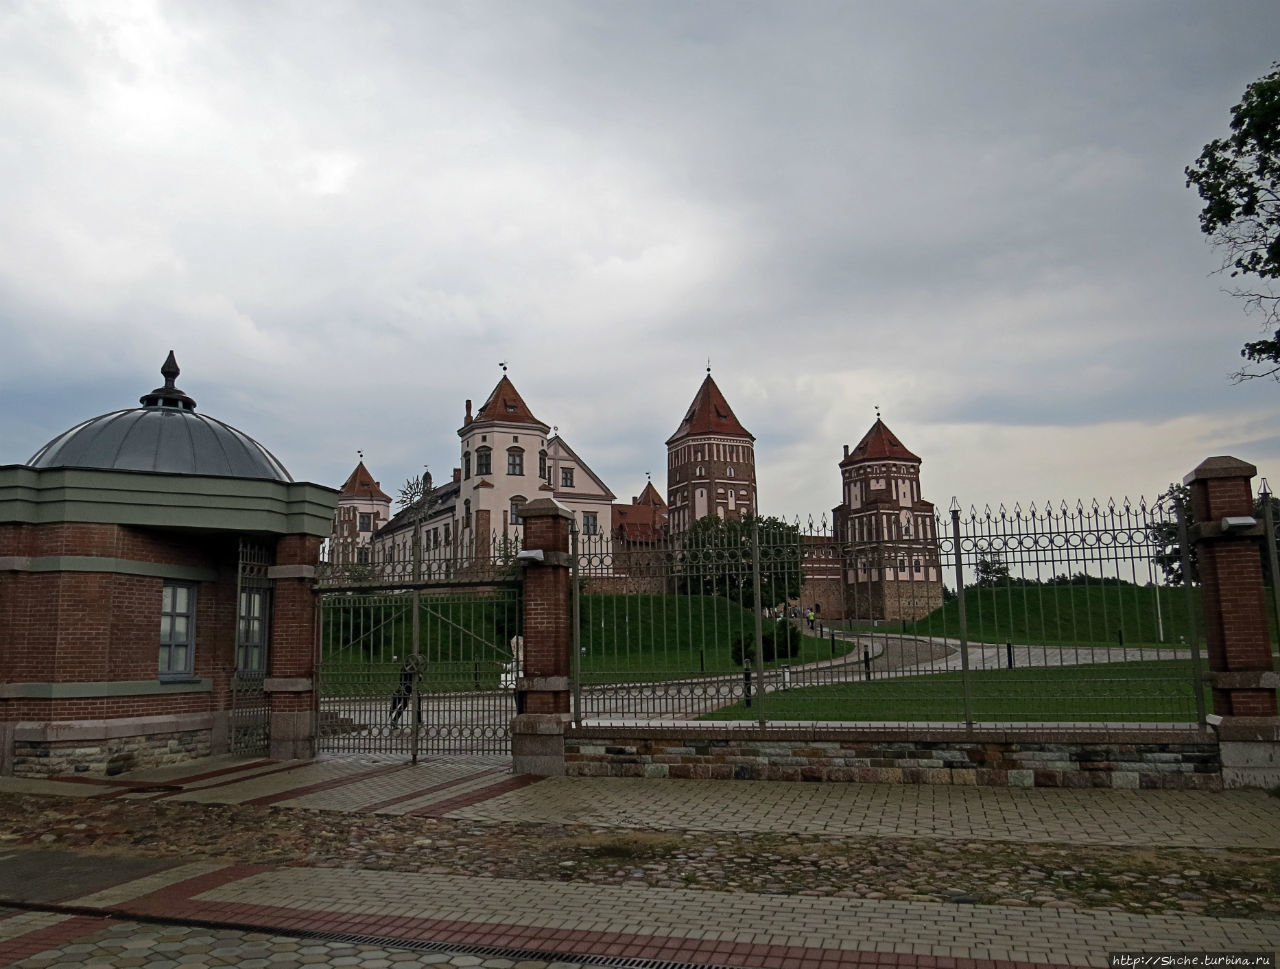 Мирский замковый комплекс  — памятник ЮНЕСКО № 625 Мир, Беларусь